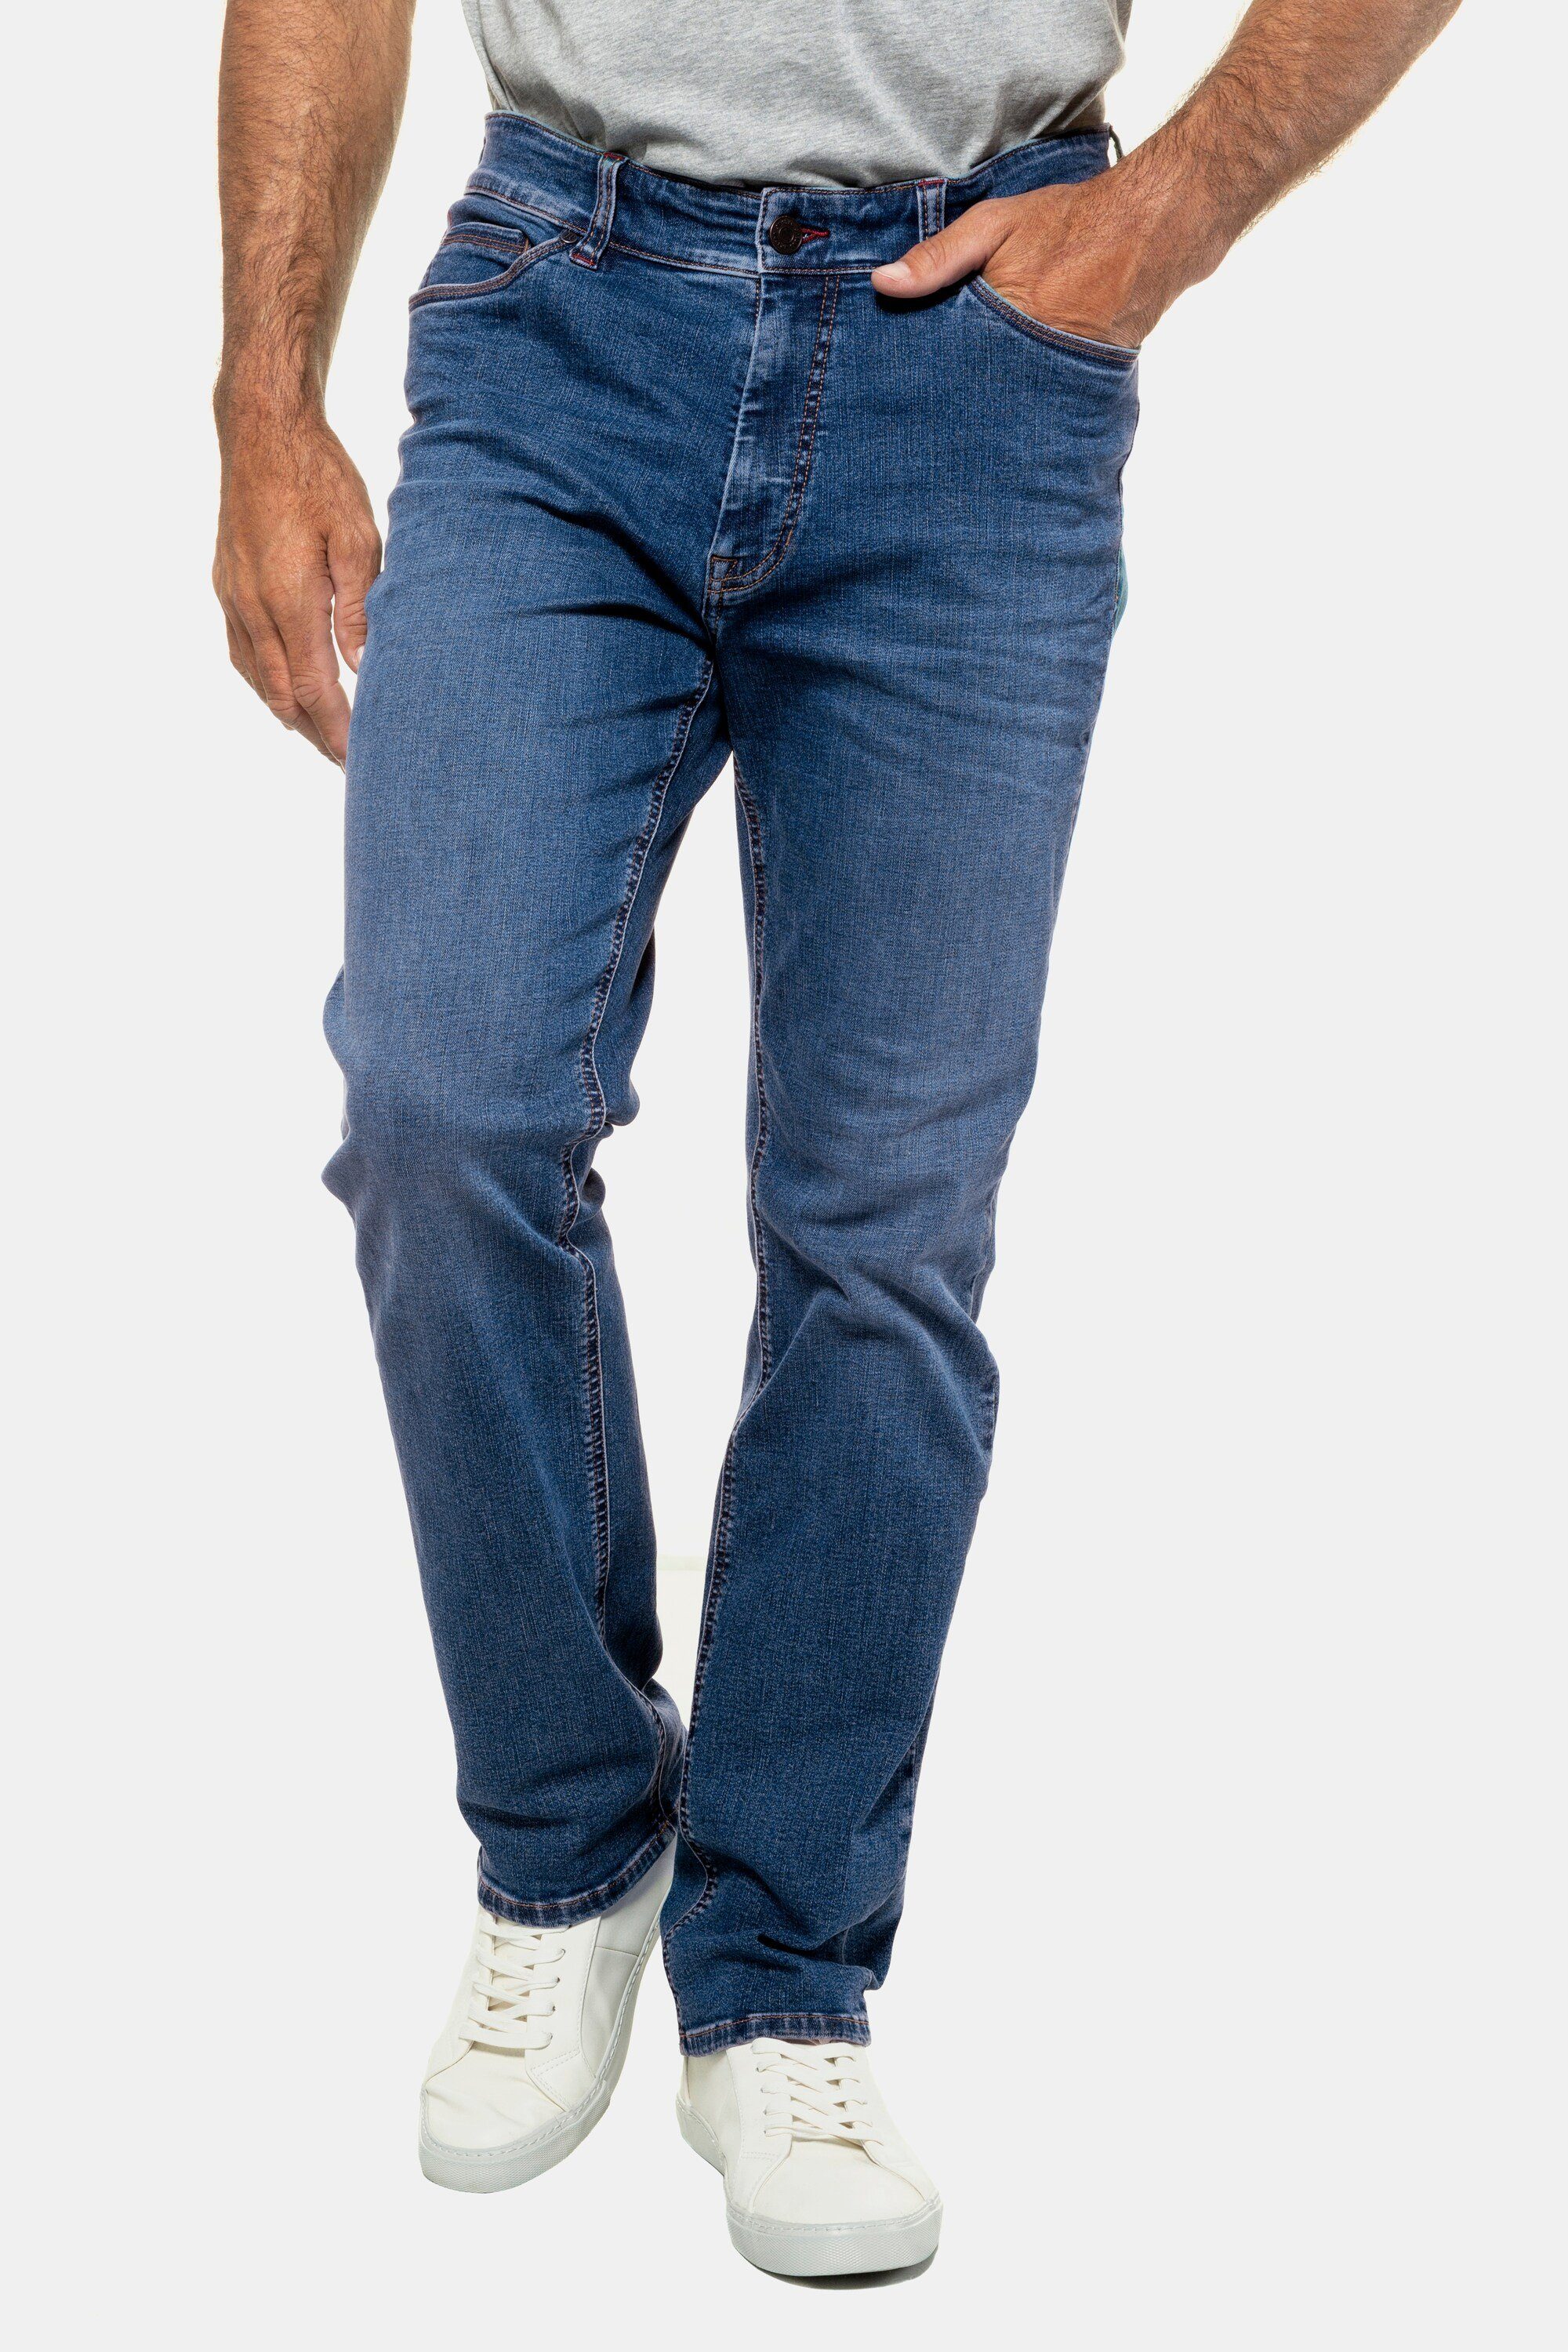 Jeans 5-Pocket-Jeans Fit JP1880 bis 70/35 FLEXNAMIC® blue Gr. Straight denim Denim